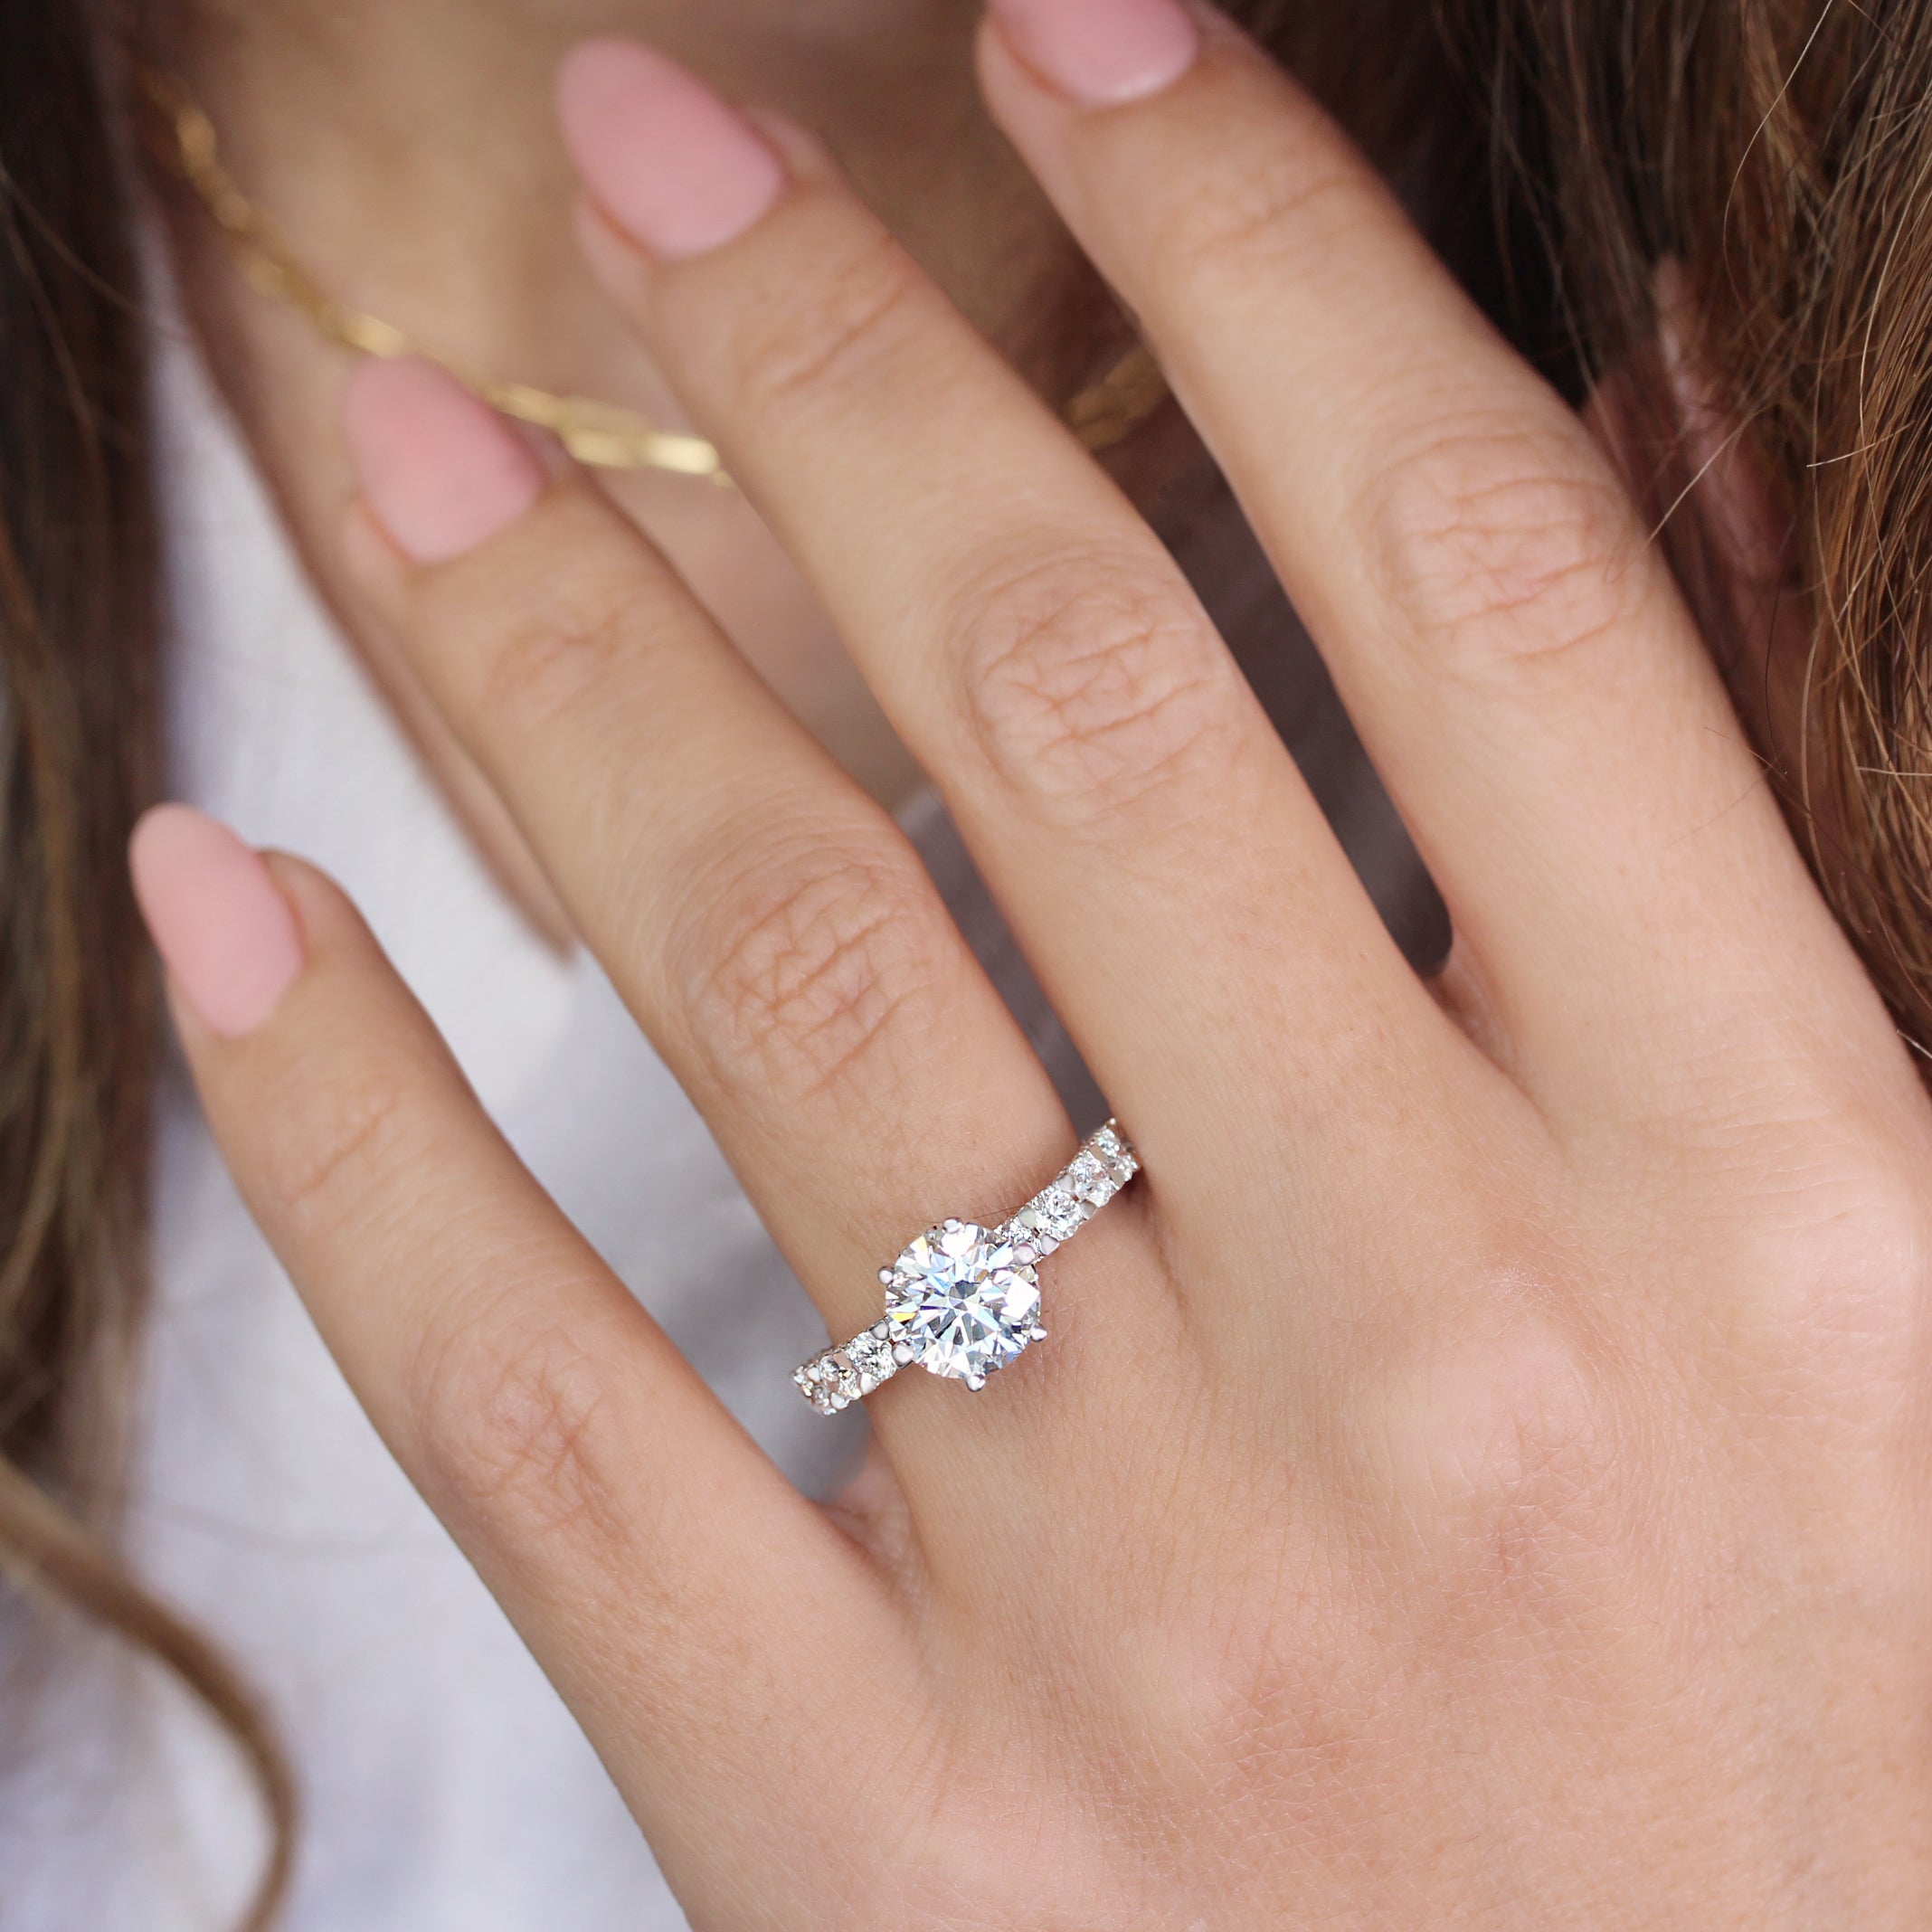 Buy Engagement Ring 2 Carat, Diamond Engagement Ring Set, 14K White Gold,  Round Shape Engagement Wedding Set, Round Shape Ring, Knife Edge Ring  Online in India - Etsy